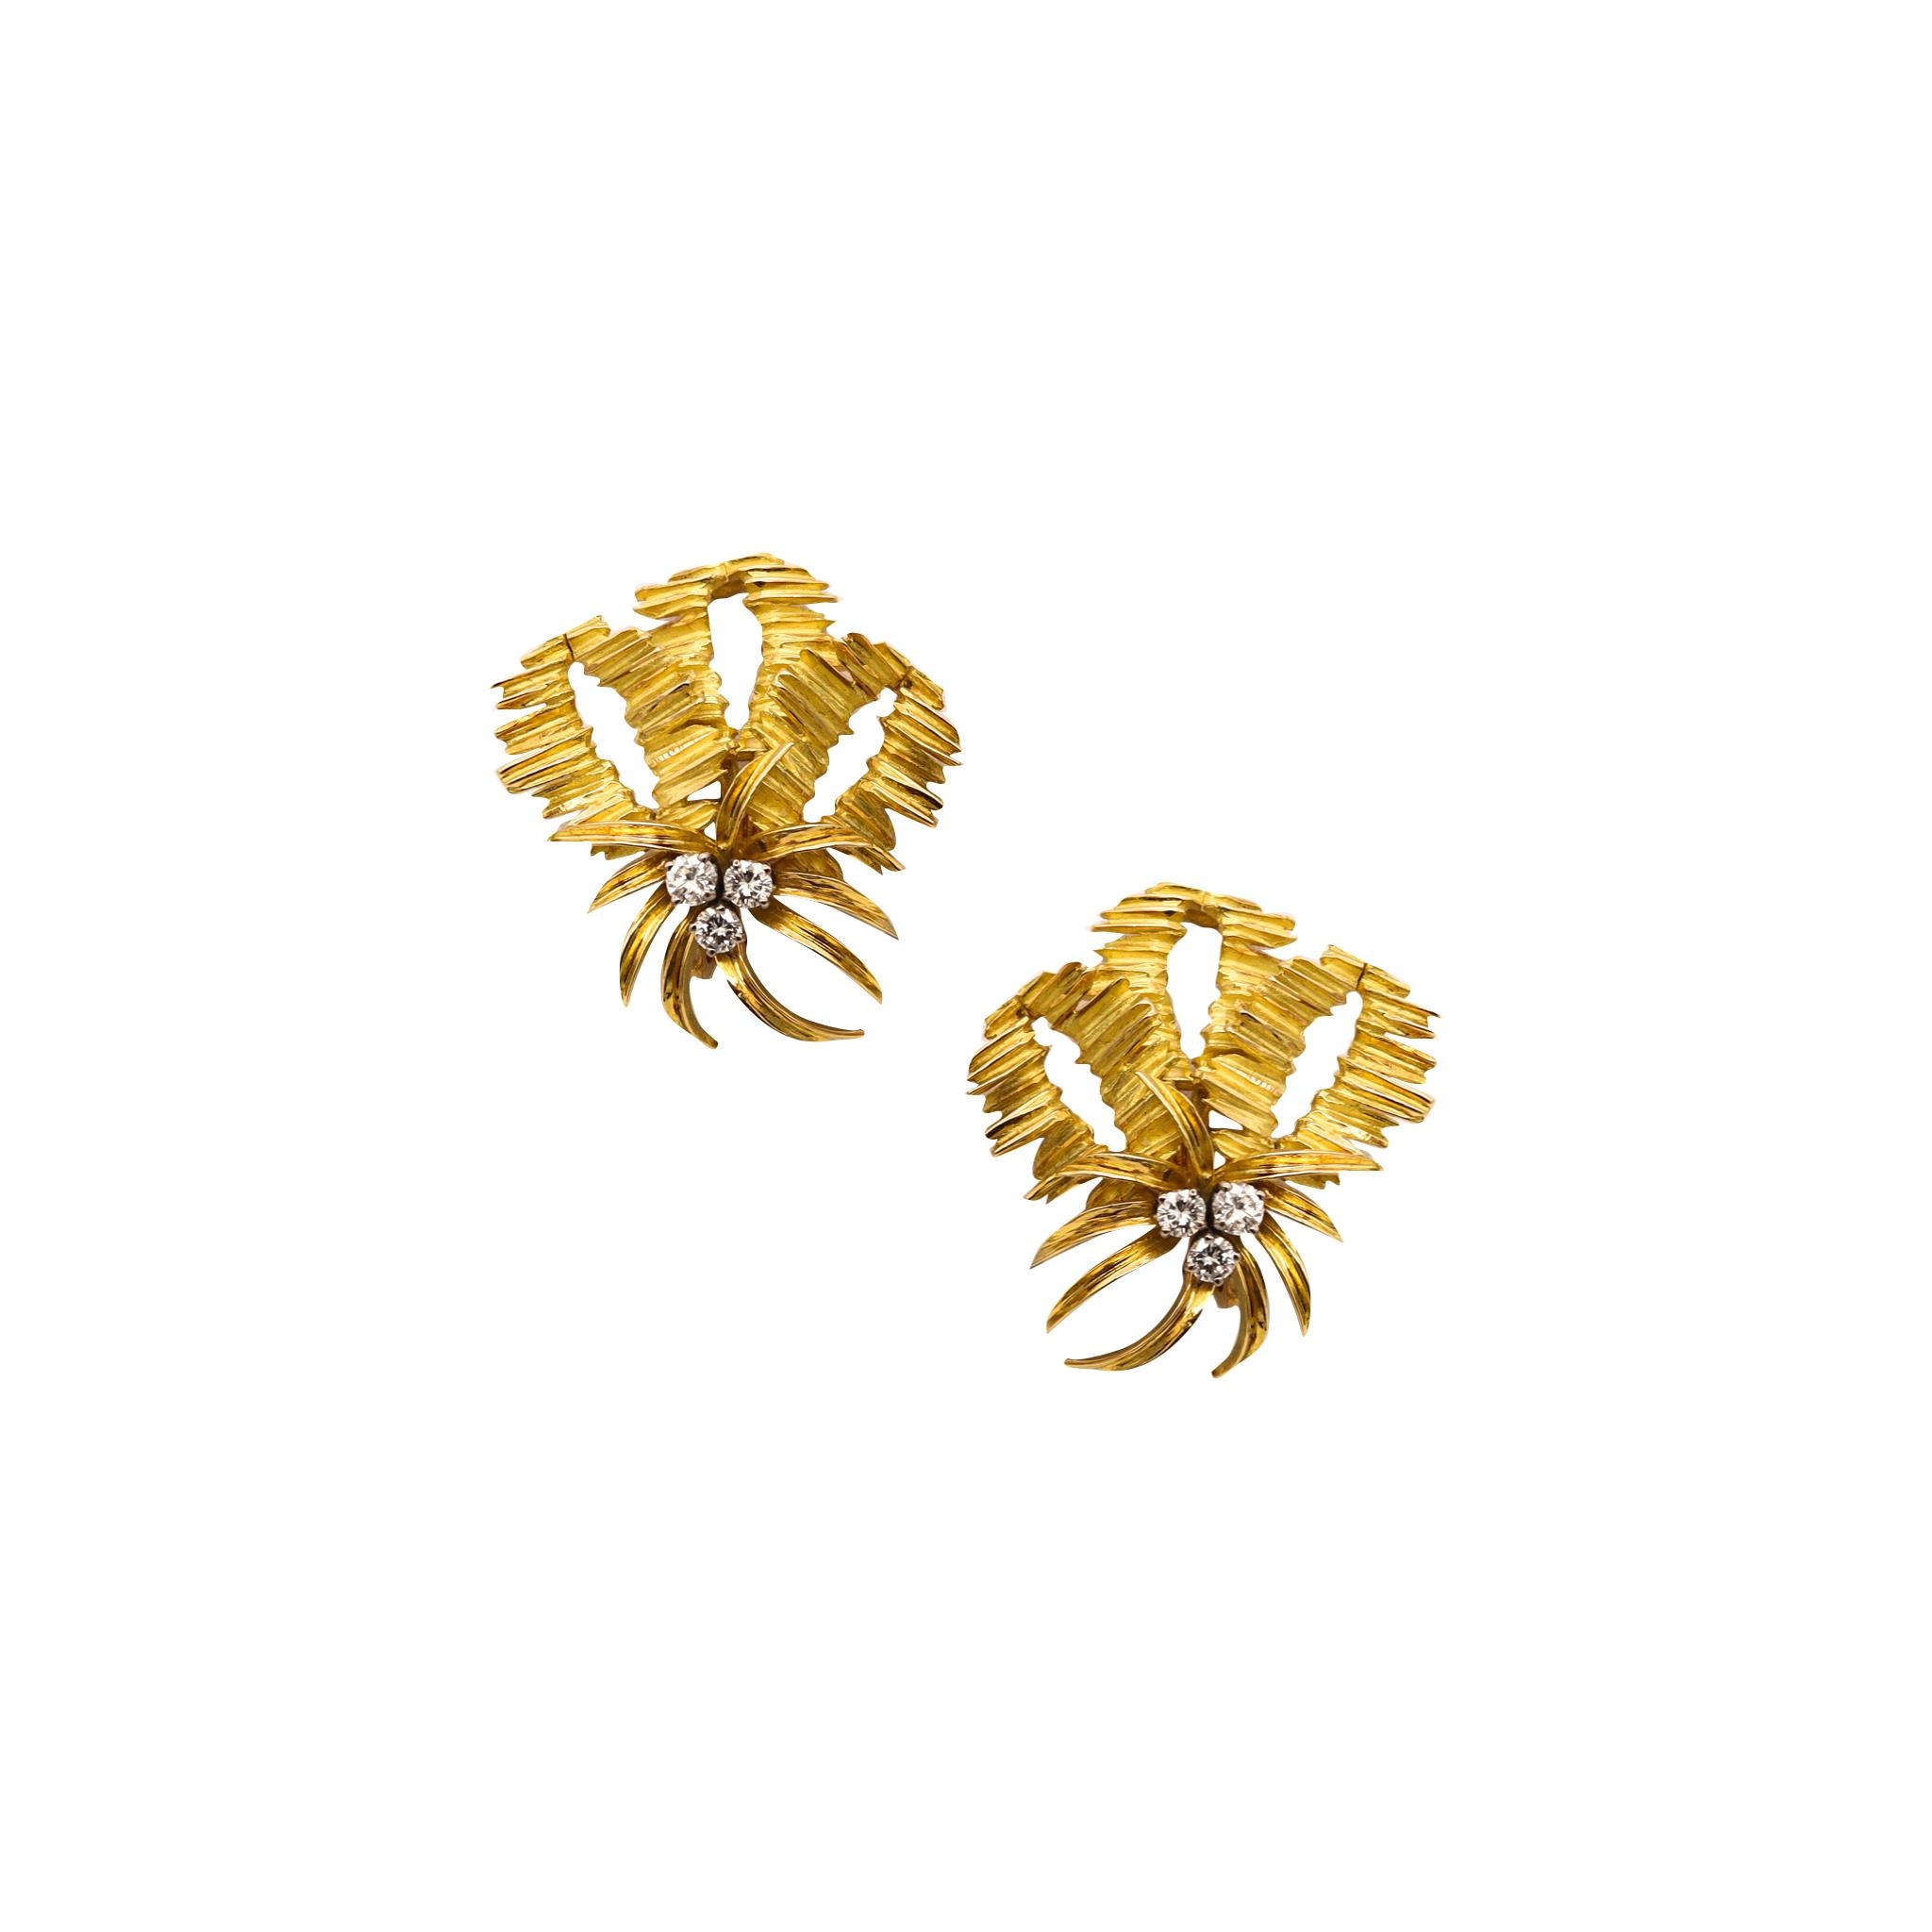 Boucles d'oreilles texturées créées par George L'Enfant.

Pièces très rares, créées à Paris dans l'atelier de joaillerie de George L'Enfant, dans les années 1960. Ces boucles d'oreilles ont été réalisées en or jaune massif de 18 carats, avec des